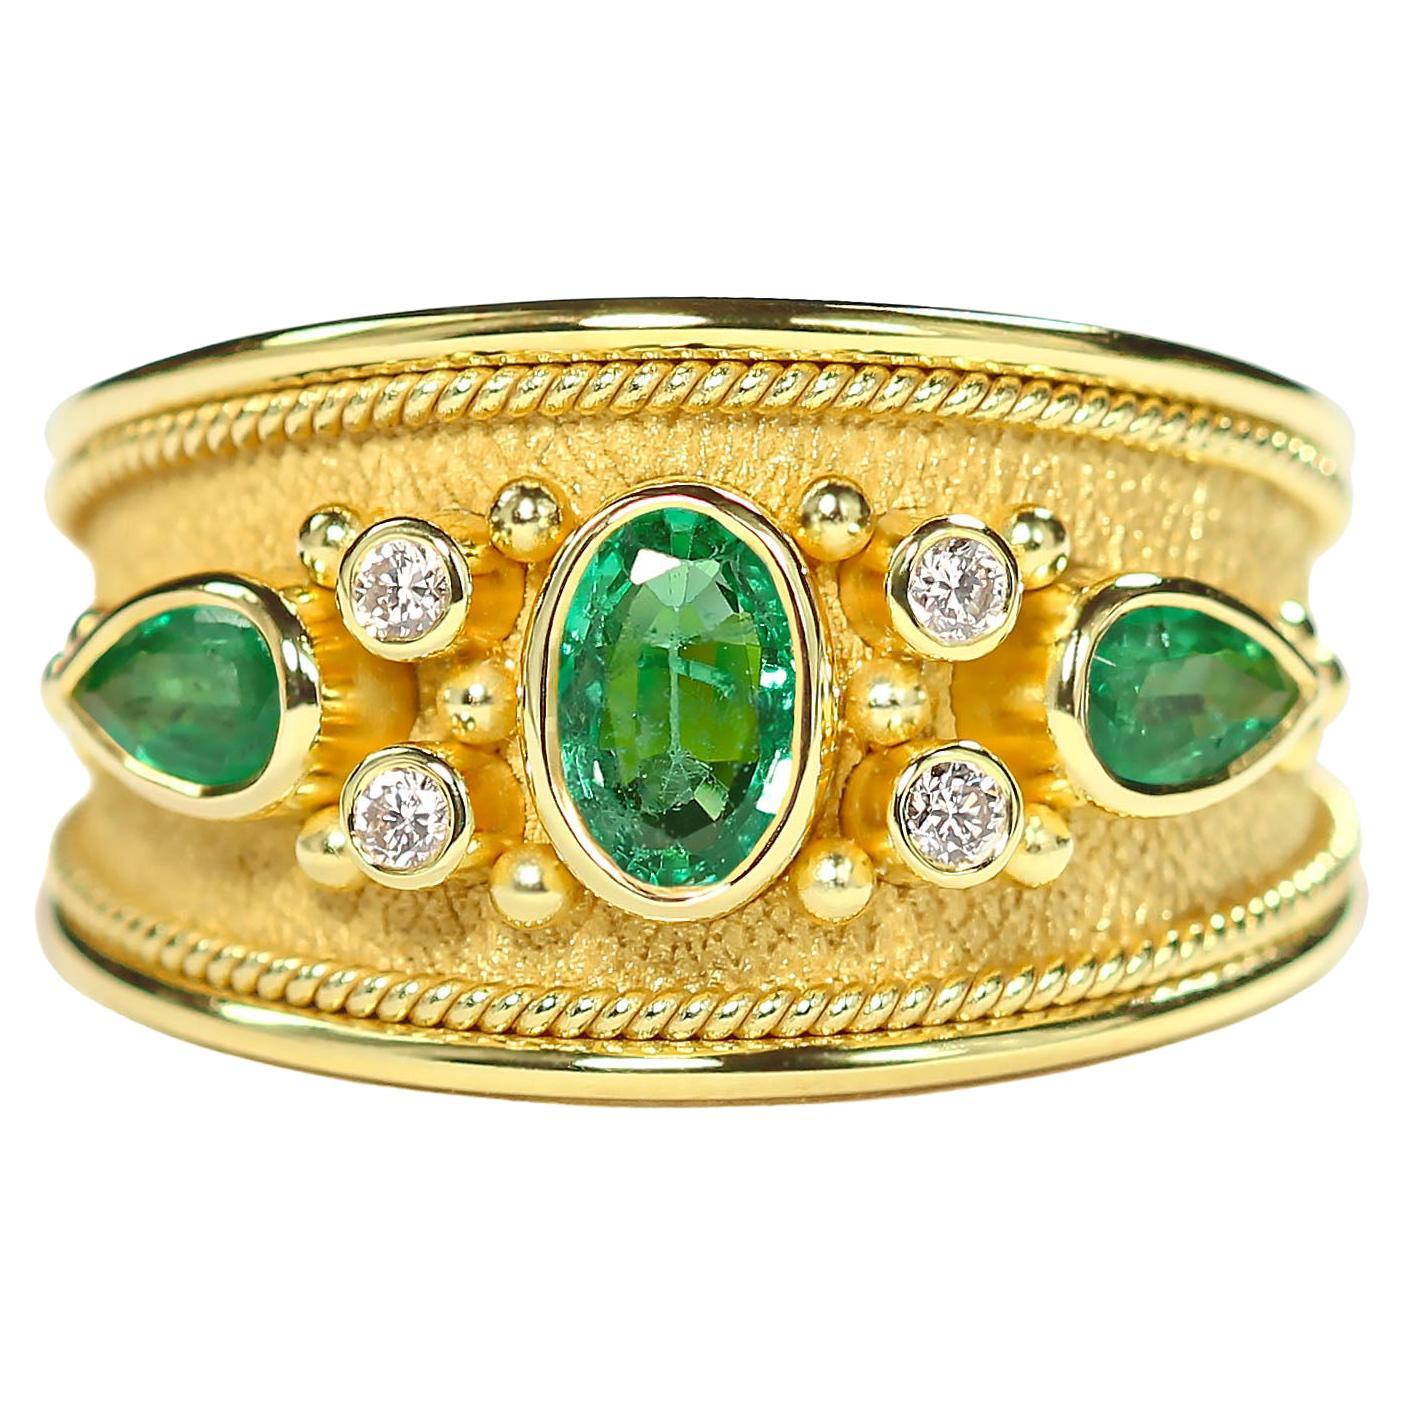 Goldring mit Smaragd und Diamanten